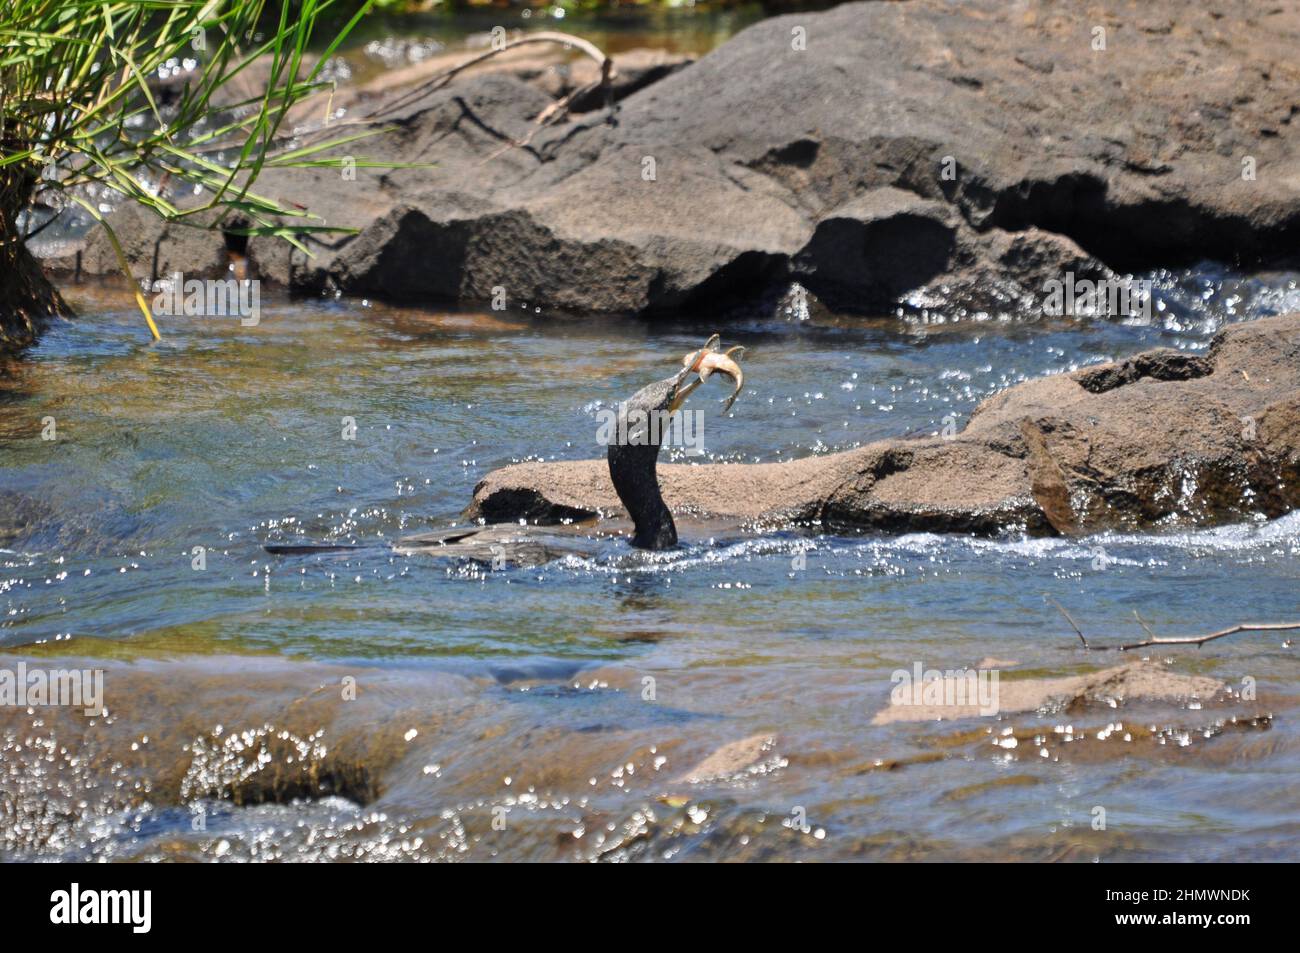 Cormorant néotrope ou cormorant olivacé (Nannopterum brasilianum) avec des poissons pêchés dans l'eau courante. Prise aux chutes d'Iguazu, Argentine. Banque D'Images